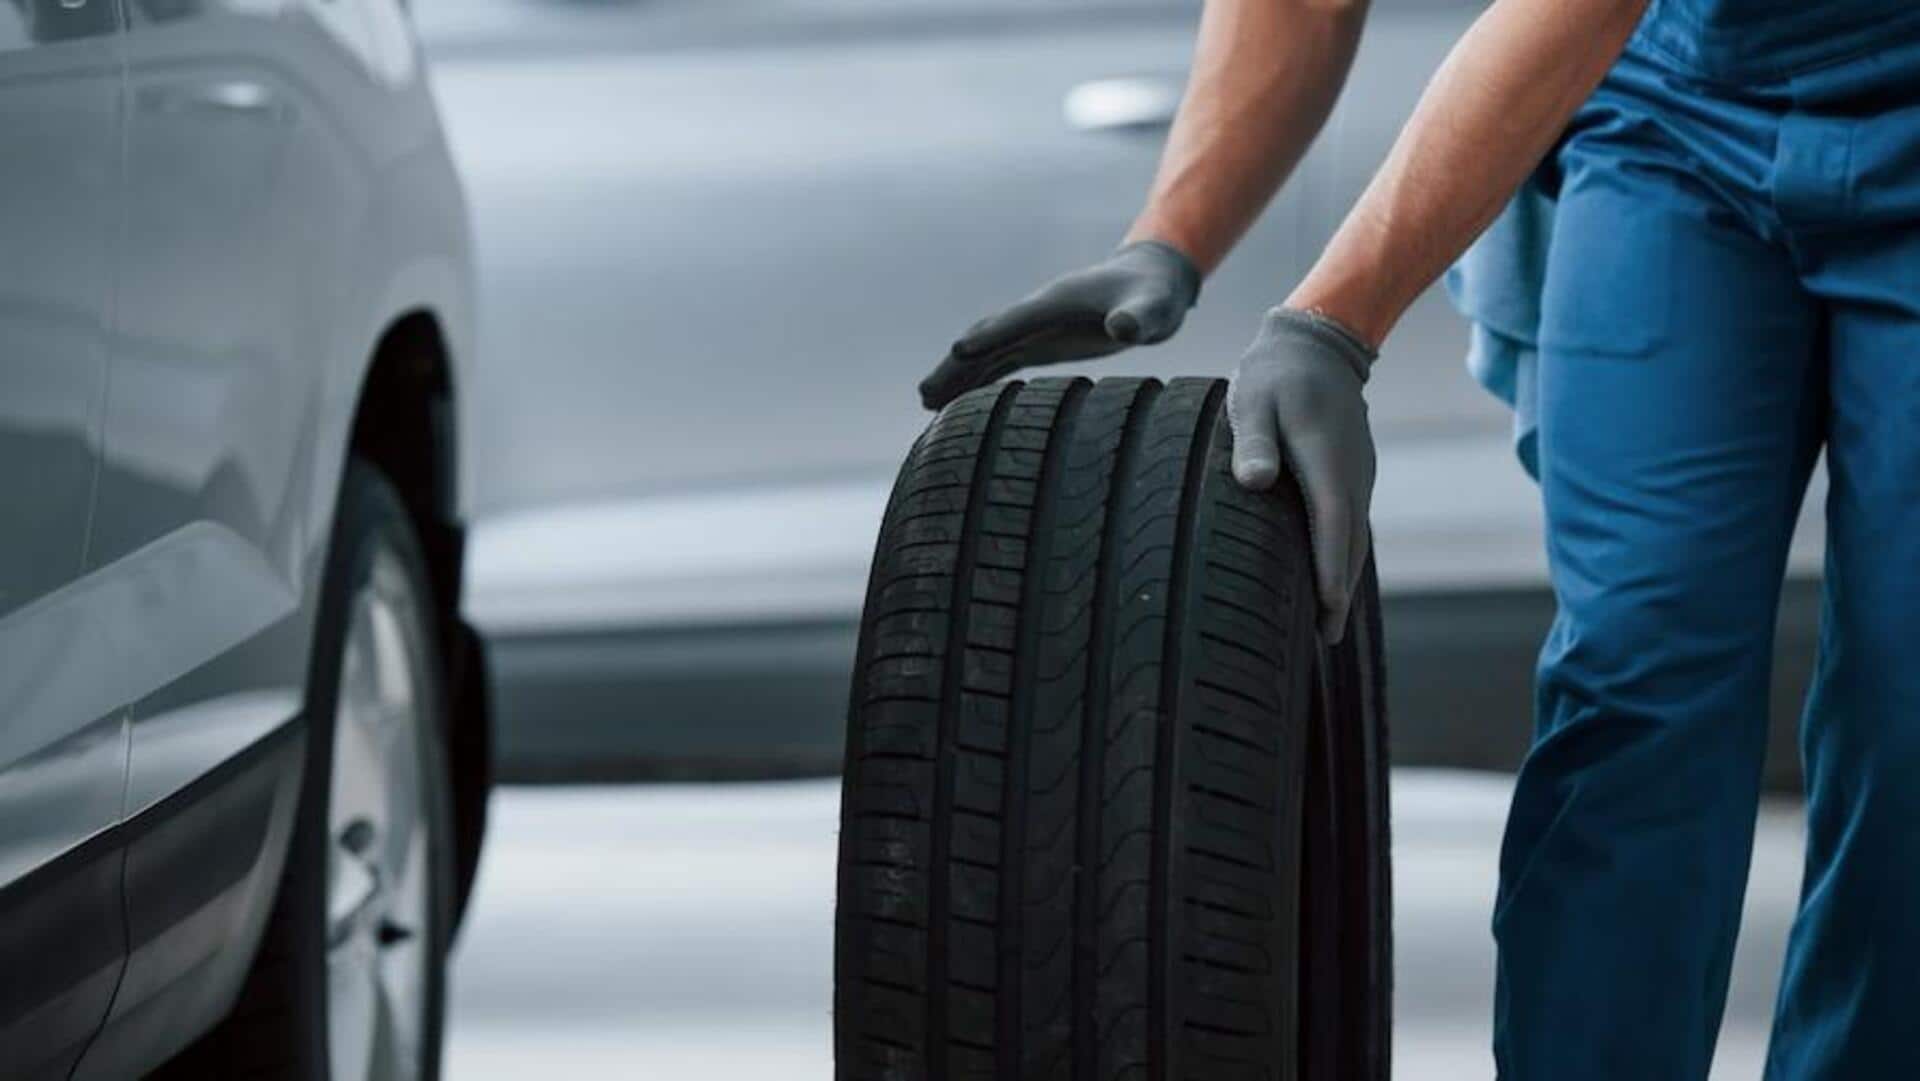 कार का टायर खरीदते समय बरतें ये सावधानी, अनदेखी पड़ सकती है भारी 